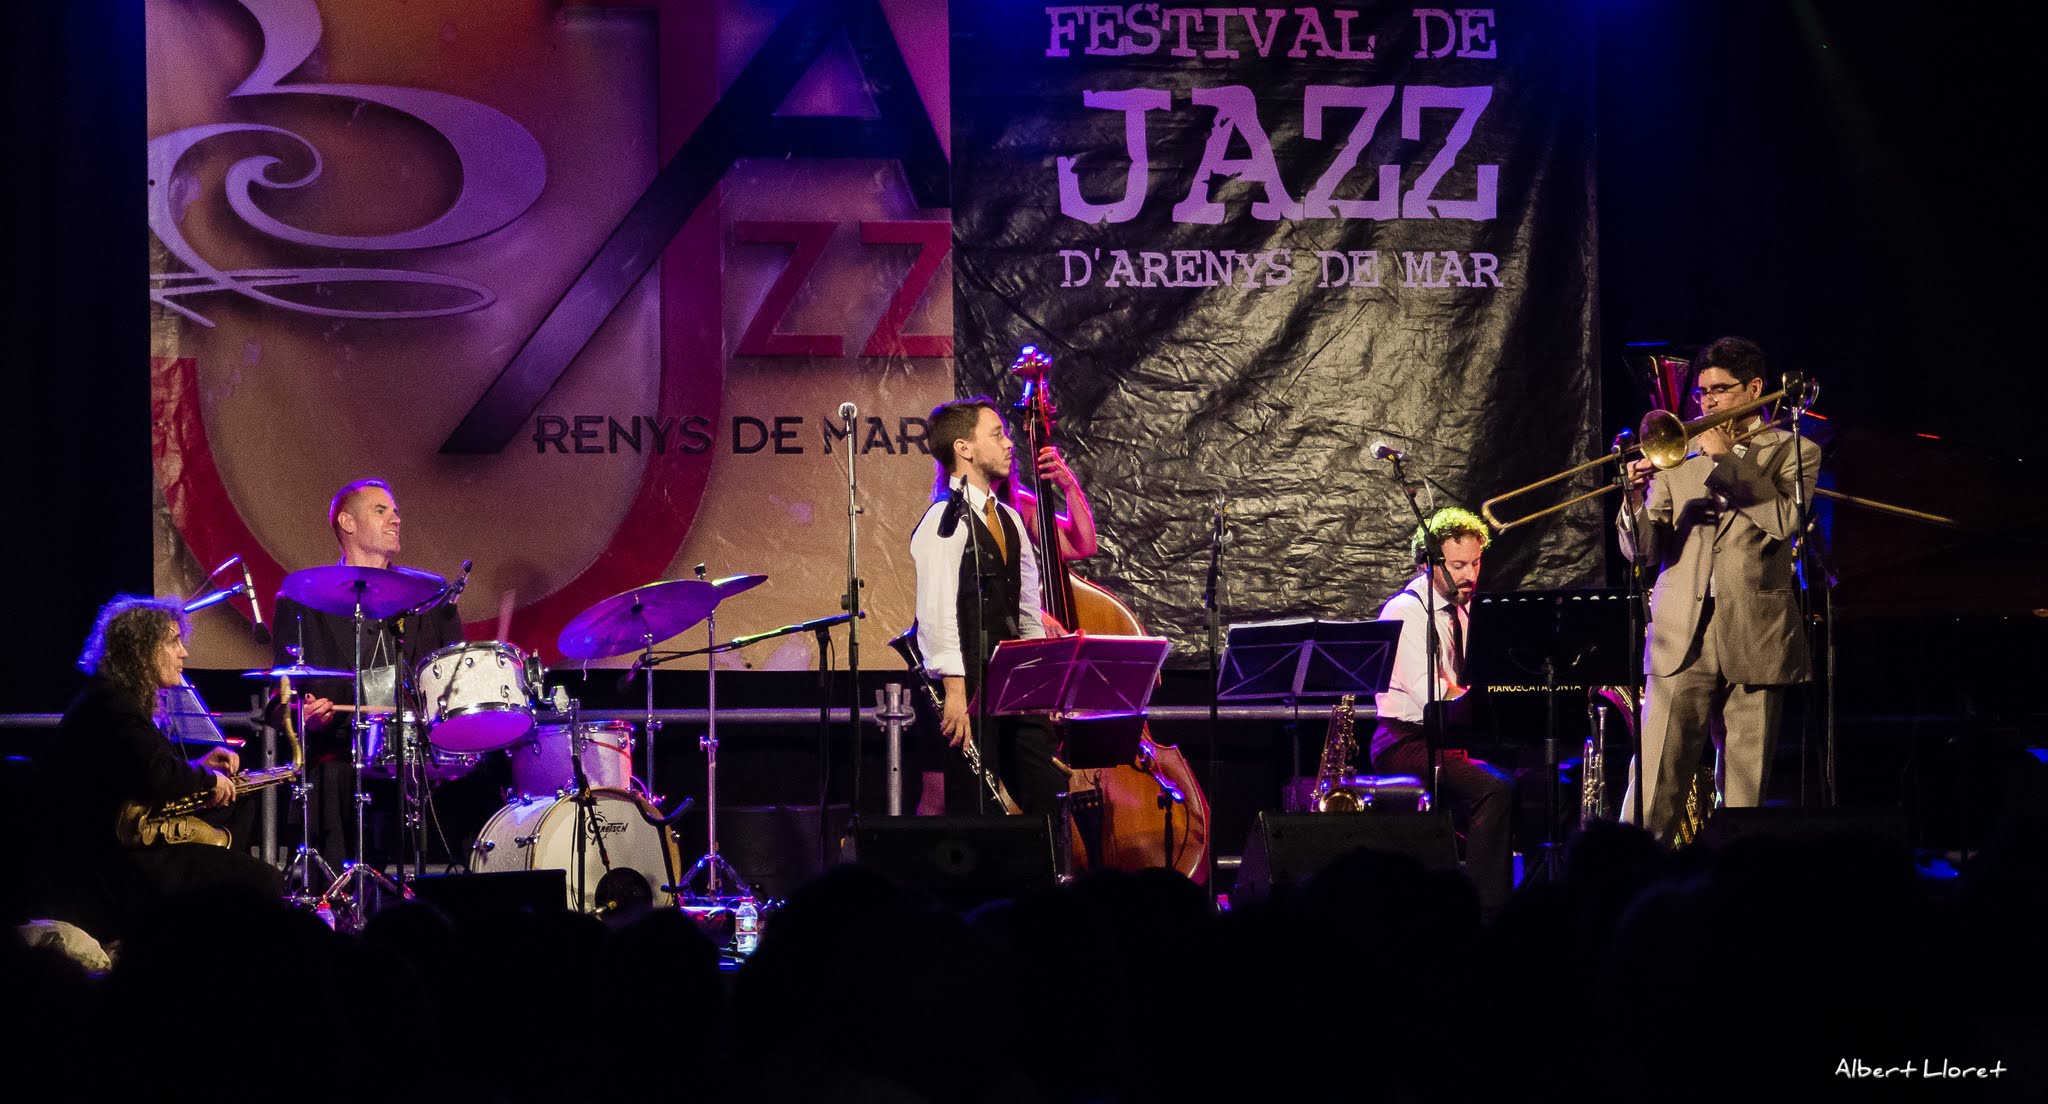 Imatges del 25 Festival de Jazz d'Arenys de Mar - 2016 - Foto 31327317